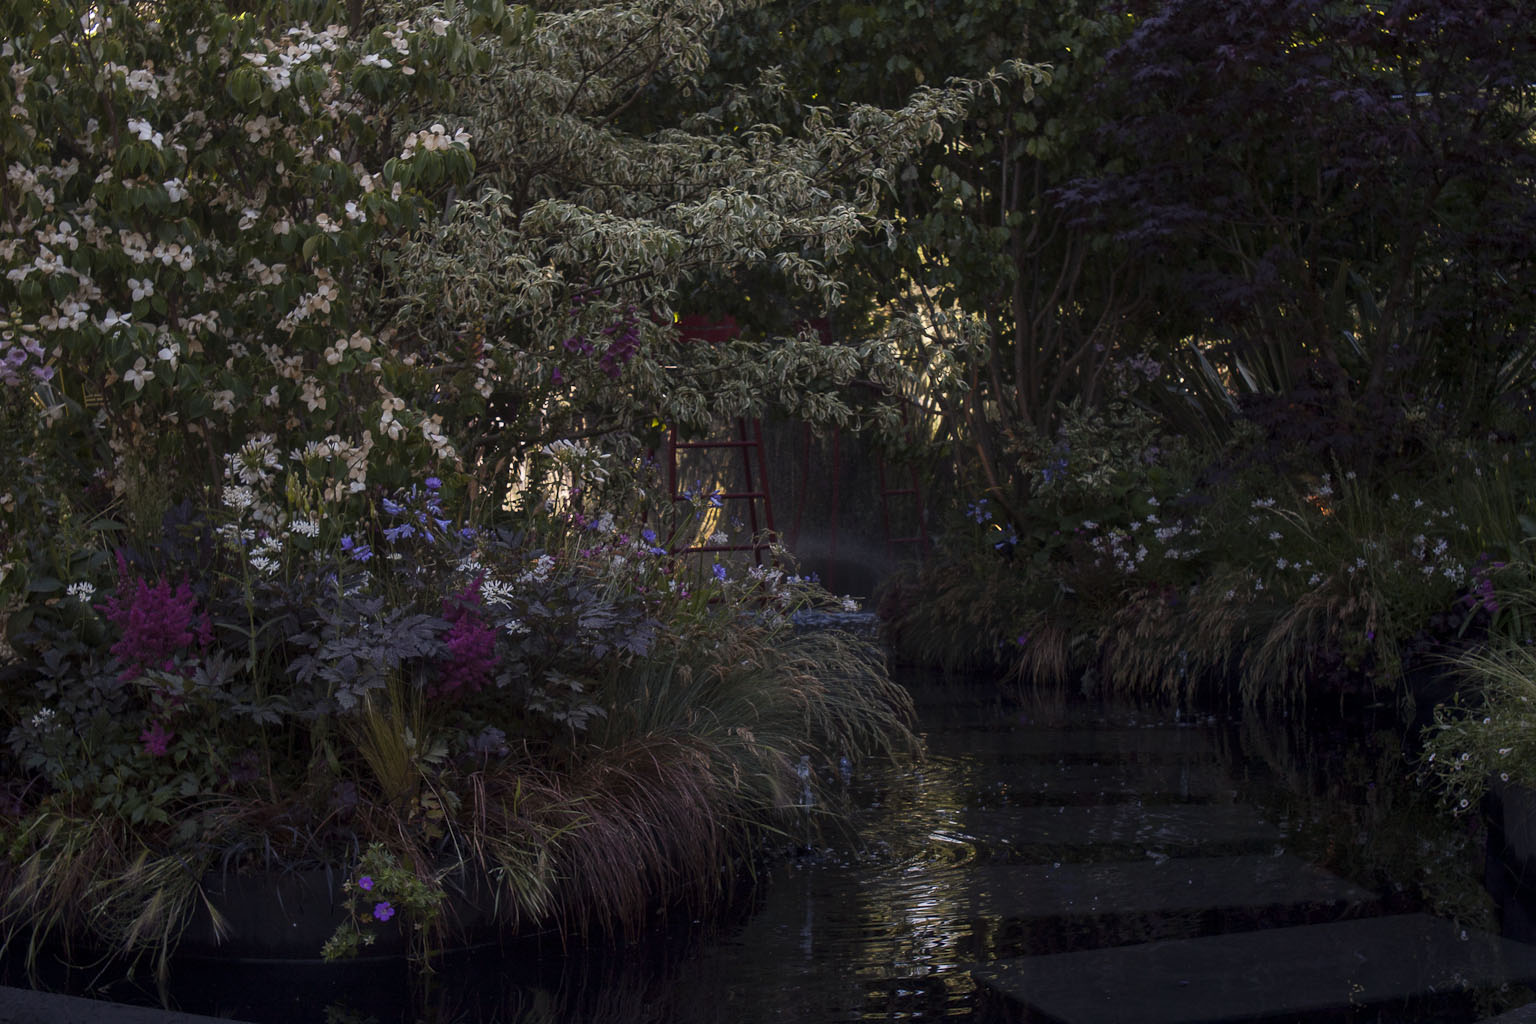 Le jardin noir - Bureau d'études Horticulture & Jardins - Jardins Jardin 2015 aux Tuileries - Paris